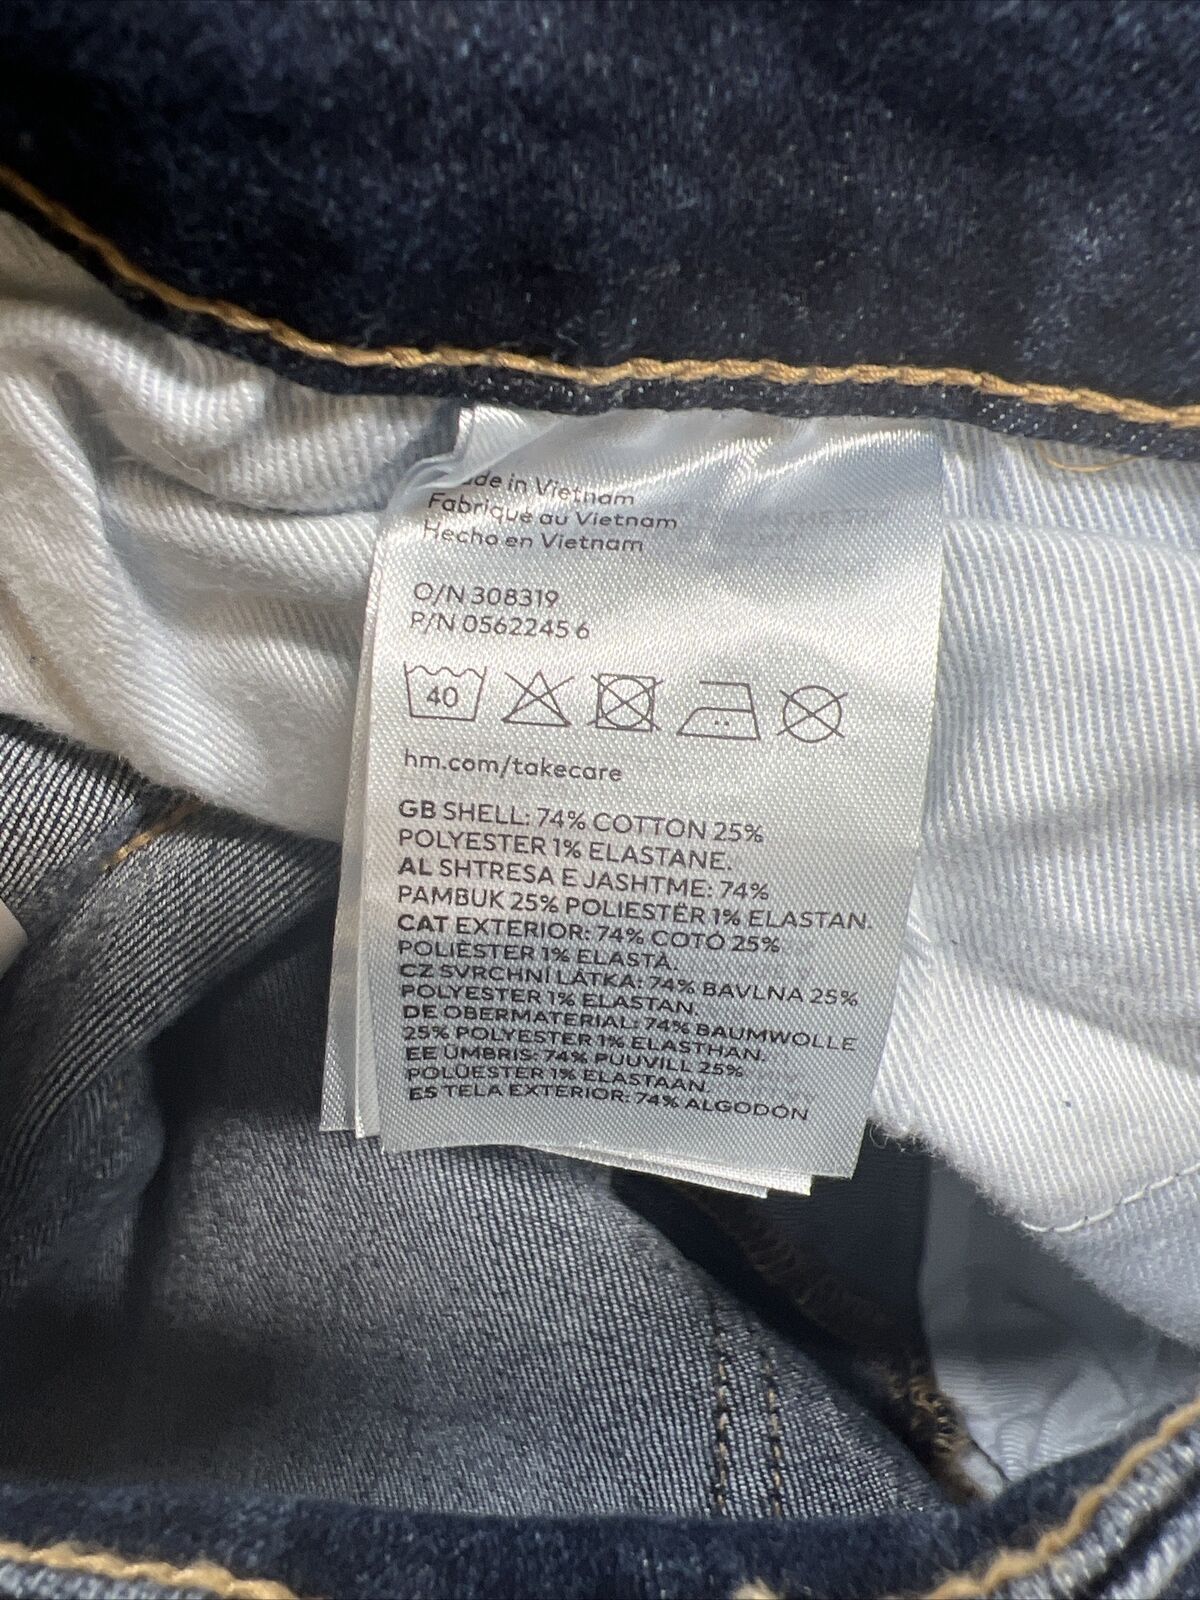 NUEVOS jeans ajustados elásticos con lavado oscuro para mujer H and M - 6